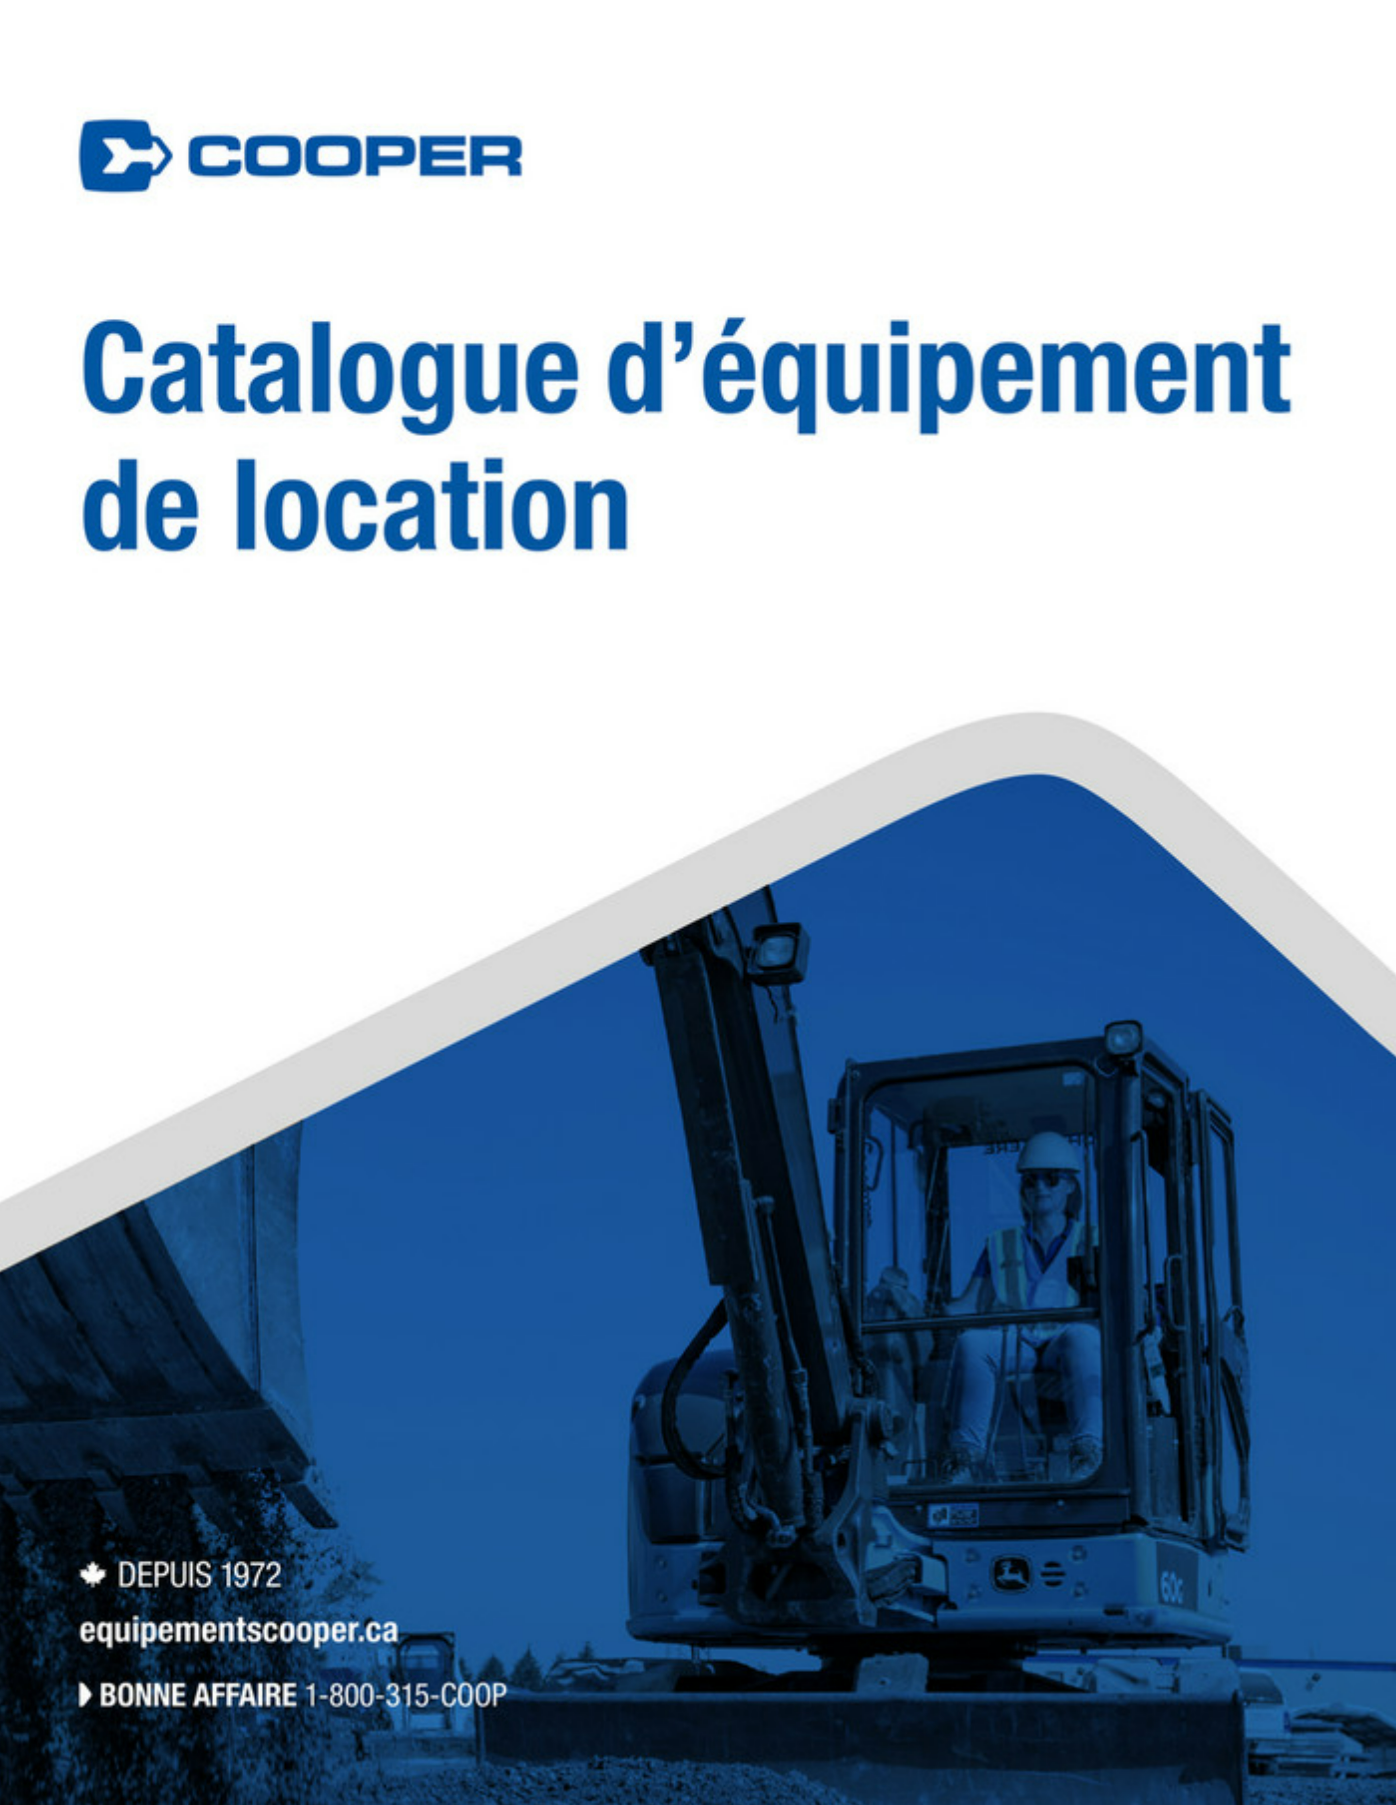 Catalogue d'equipment de location